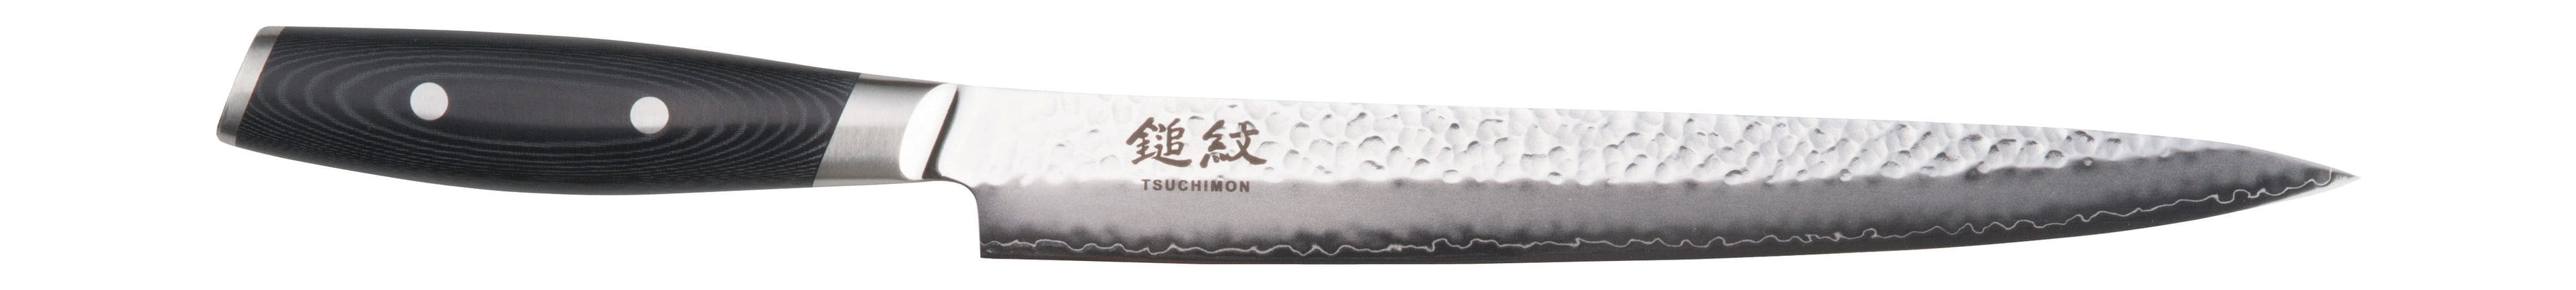 Cuchillo de talla de yaxell tsuchimon, 25.5 cm